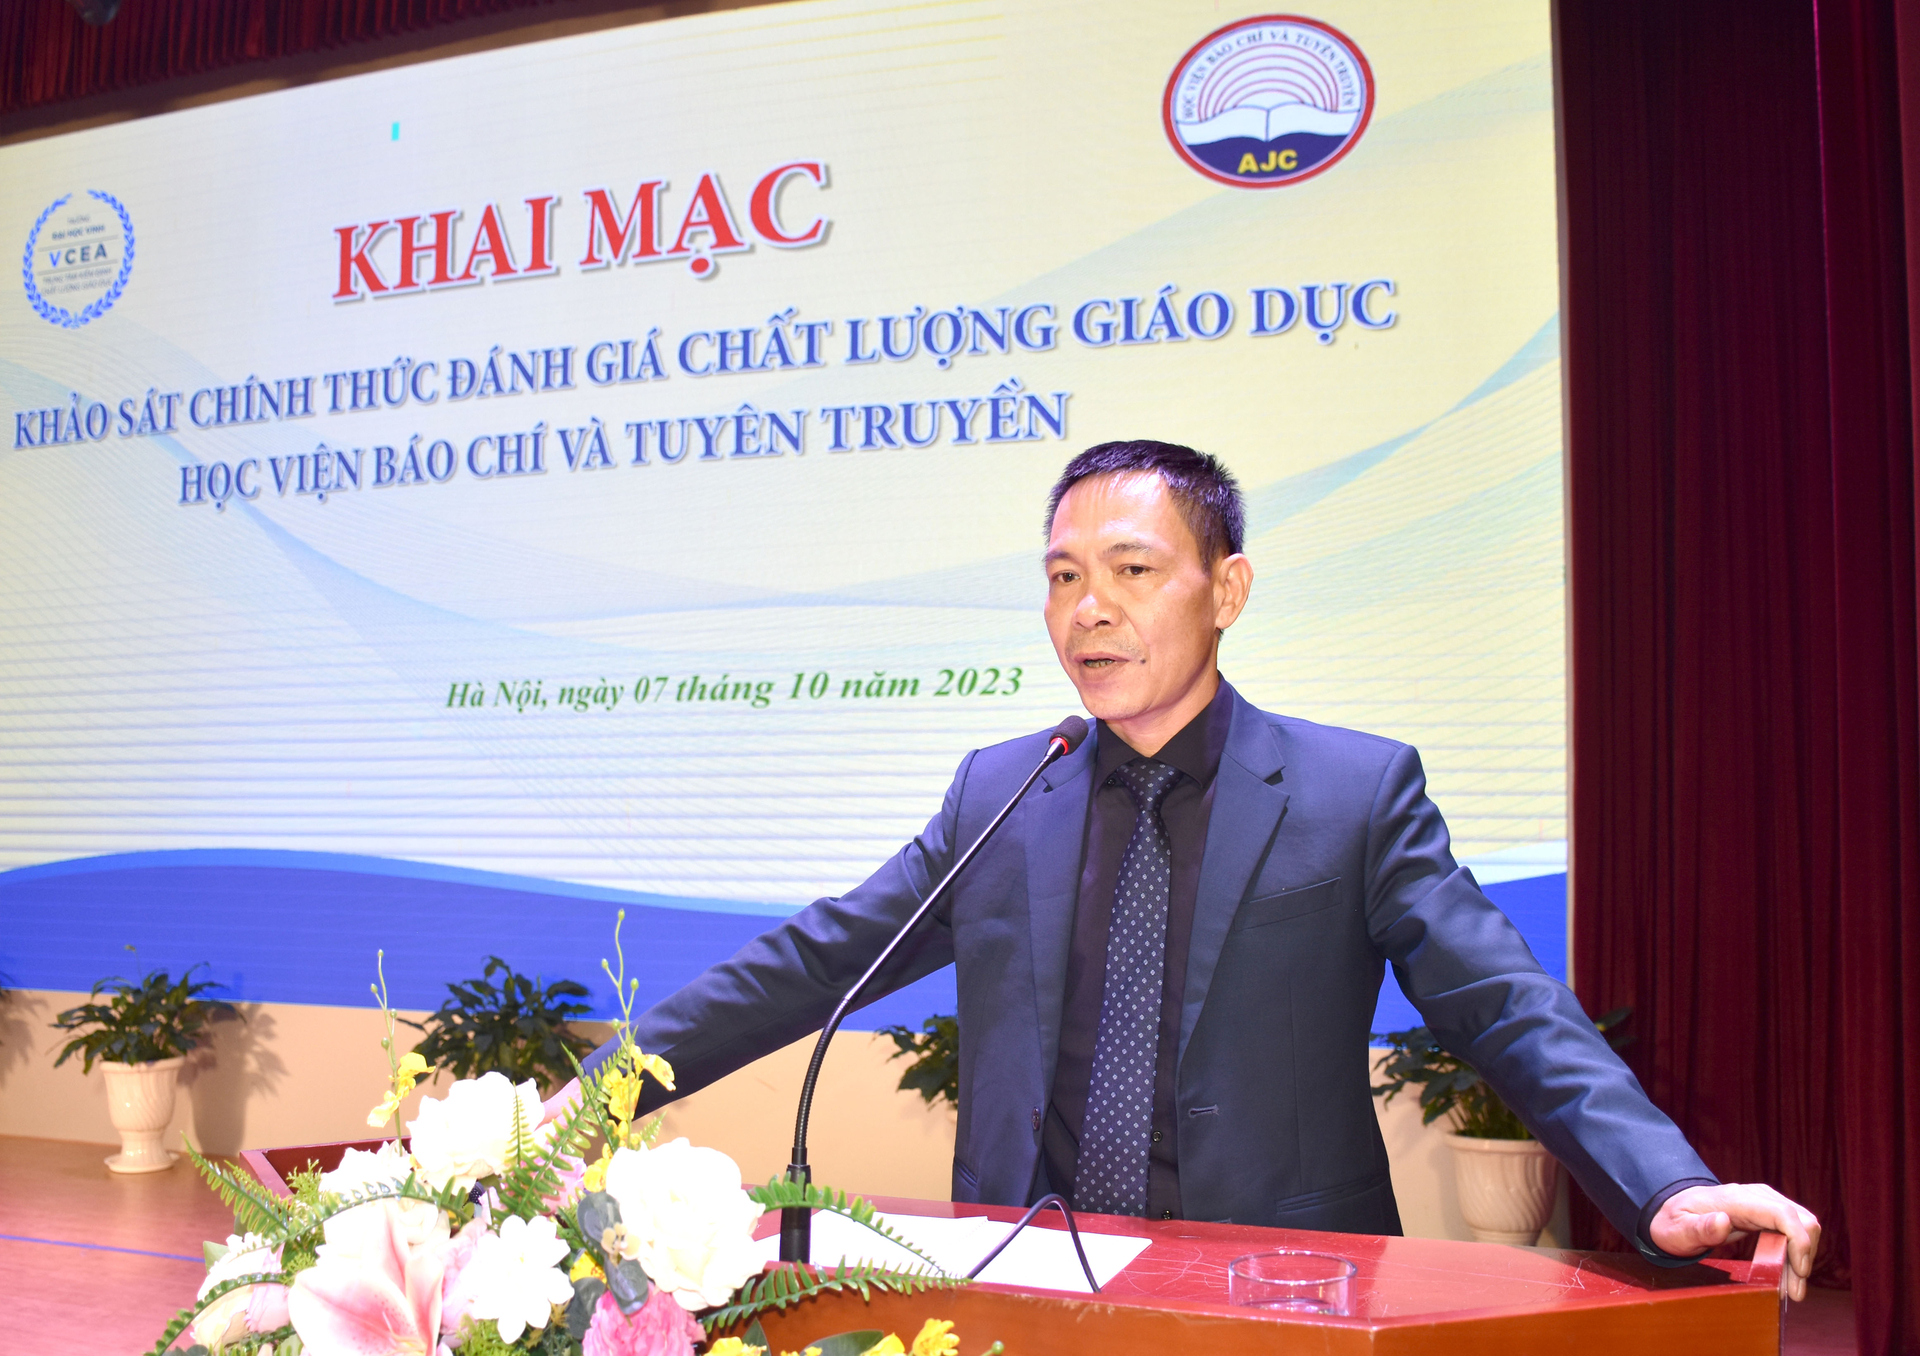 Tiến sĩ Nguyễn Đình Huy, Phó Giám đốc Trung tâm Kiểm định chất lượng giáo dục Đại học Vinh phát biểu khai mạc